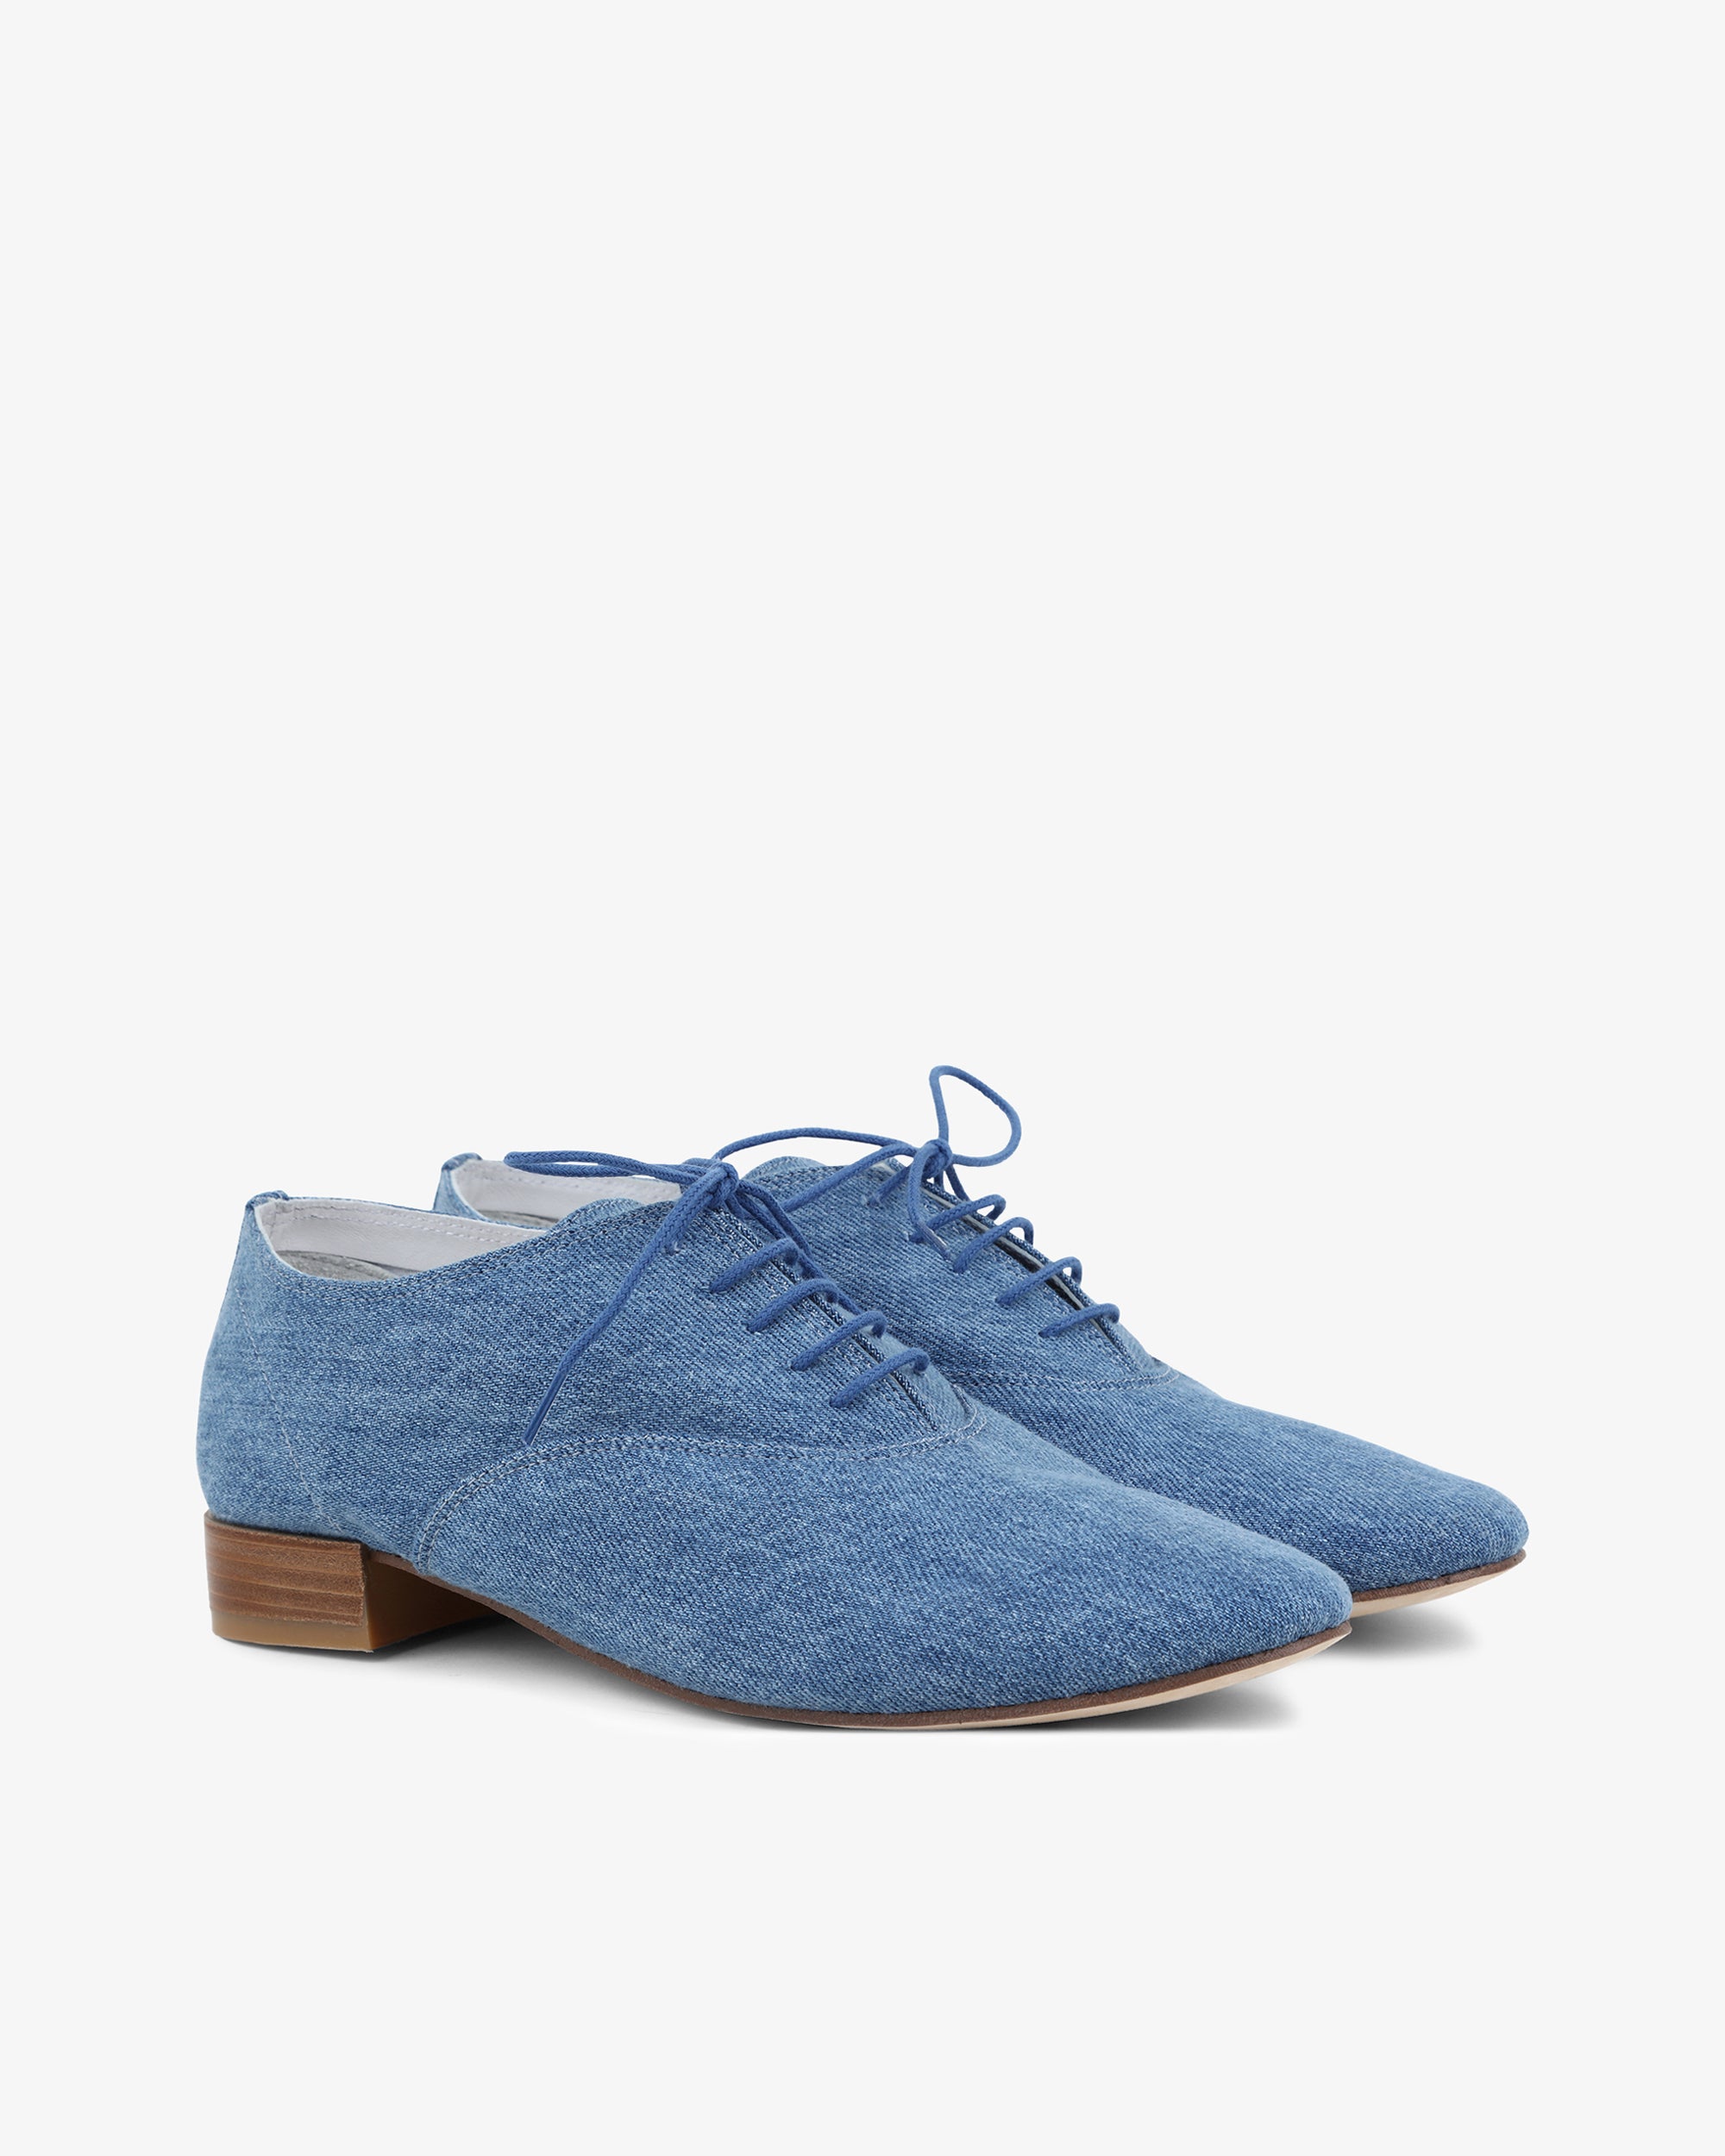 Repetto Paris | Zizi oxford shoes | Color Everest blue